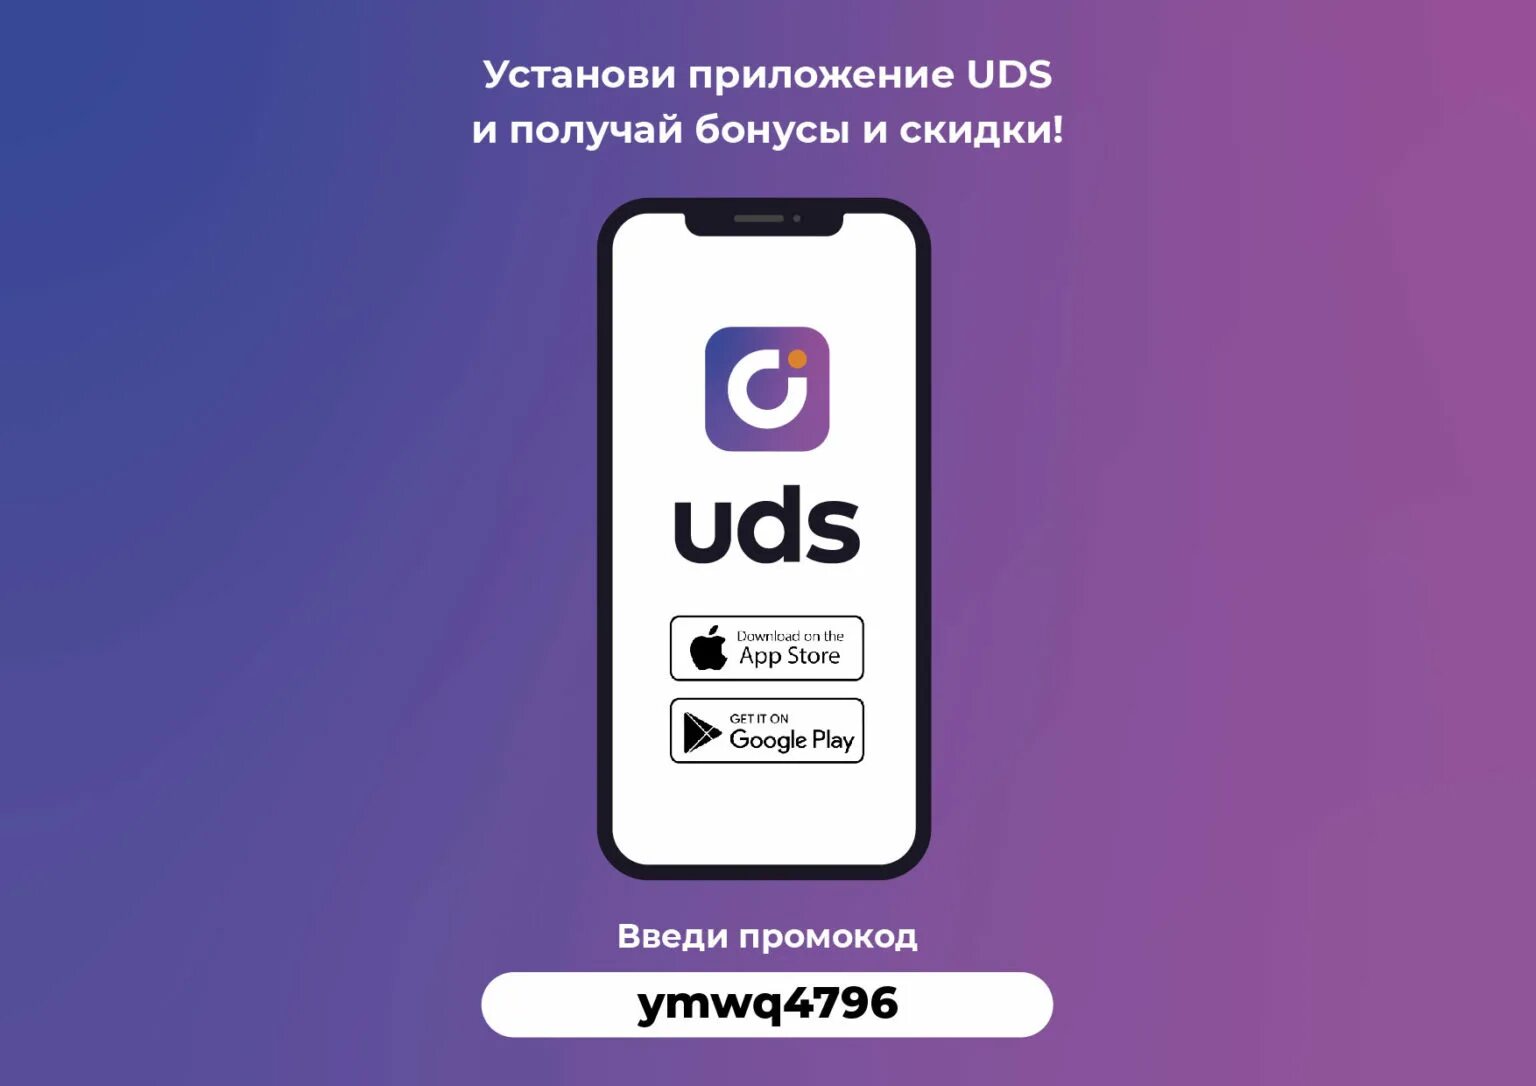 UDS приложение. UDS скидки. Система лояльности UDS. Бонусы ЮДС.